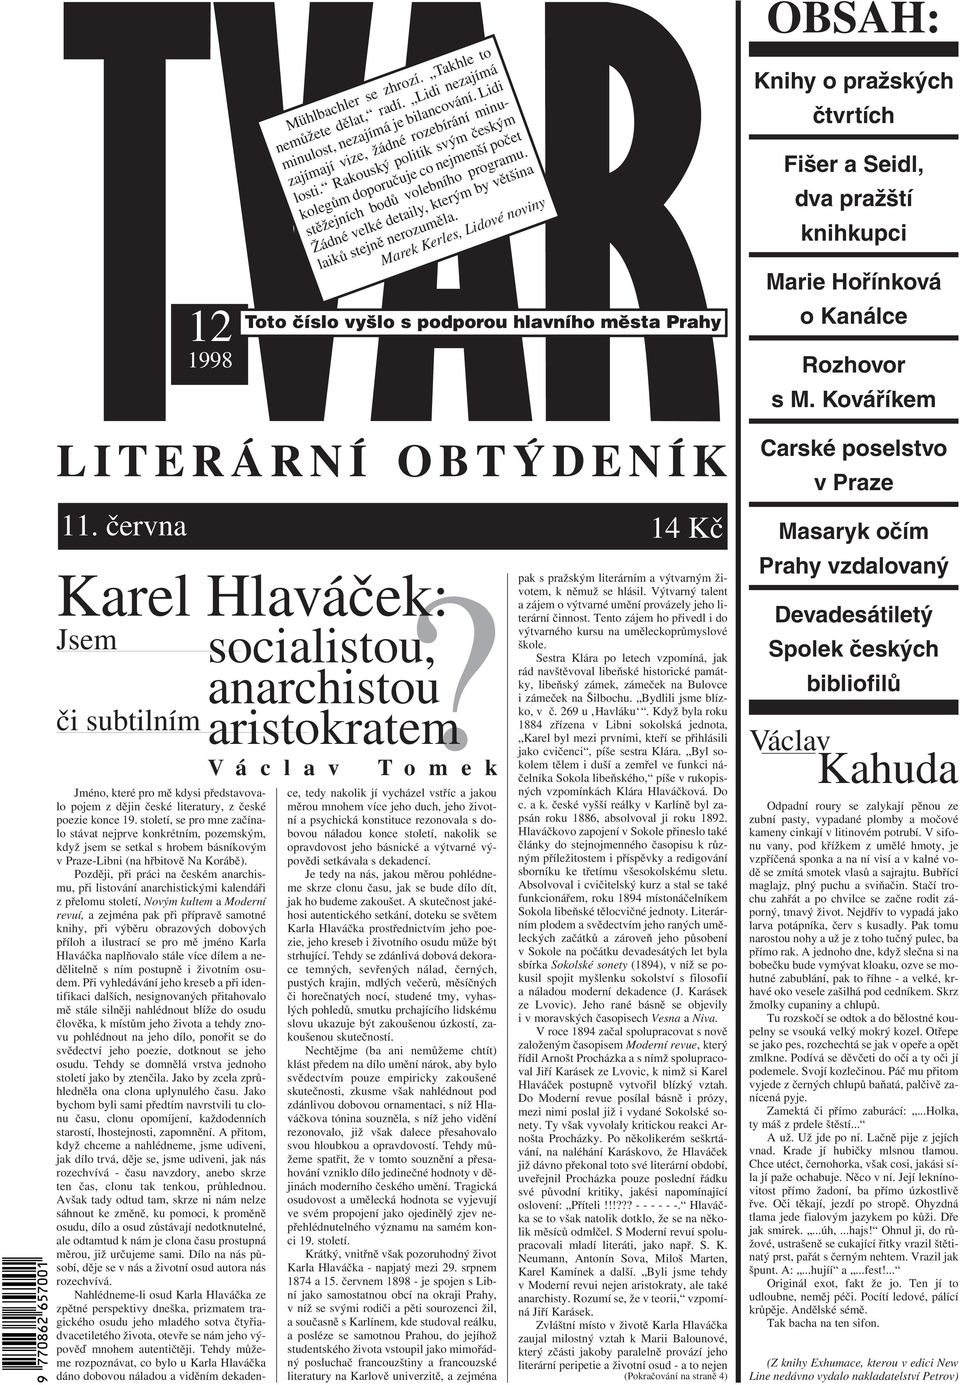 Karel Hlaváček: socialistou, anarchistou aristokratem OBSAH: LITERÁRNÍ  OBTÝDENÍK - PDF Stažení zdarma